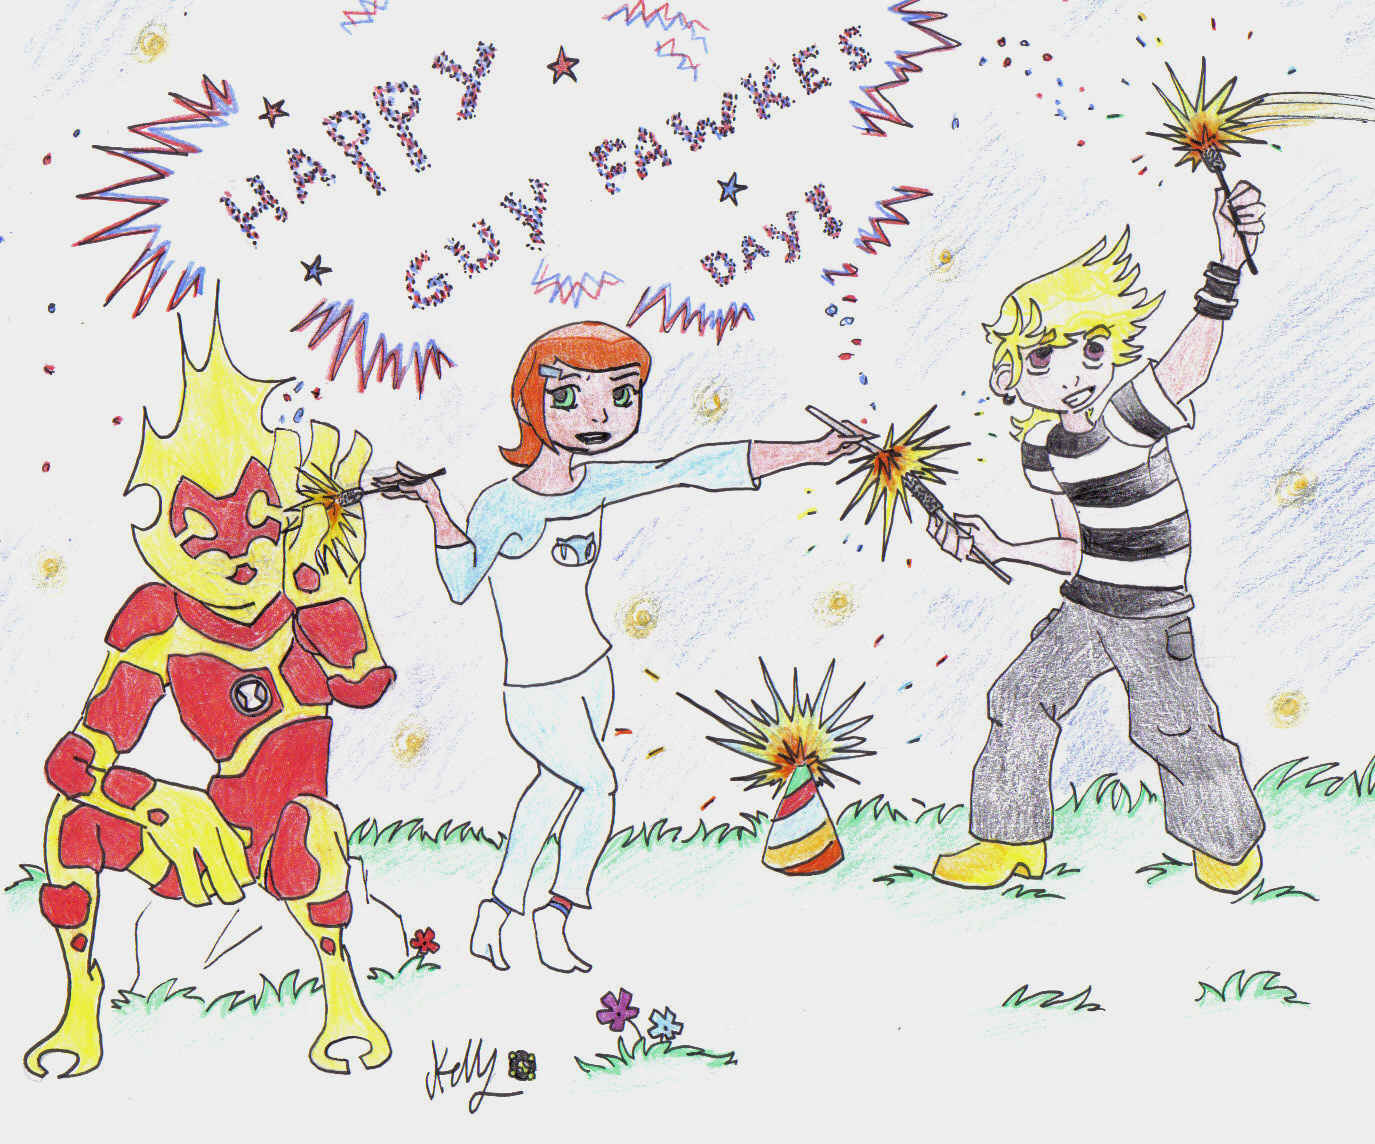 Happy guy fawkes day! by XLR810